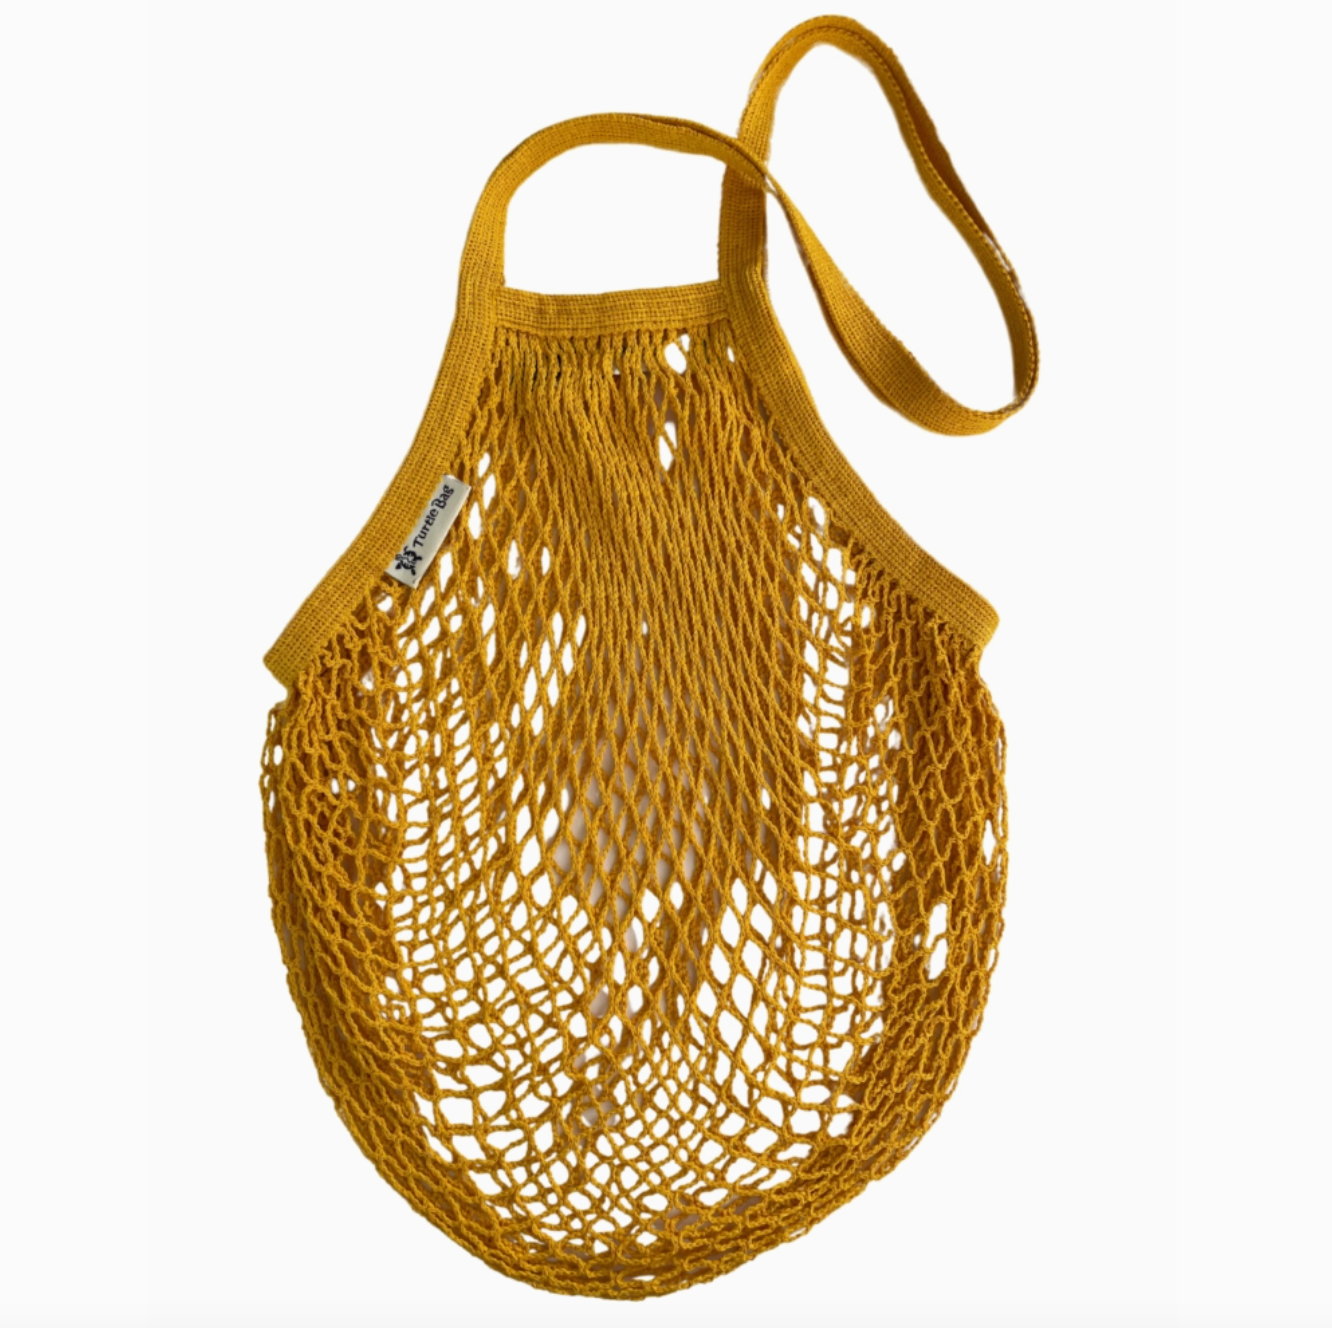 Organic Long Handled String Shopping Bag - Mustard